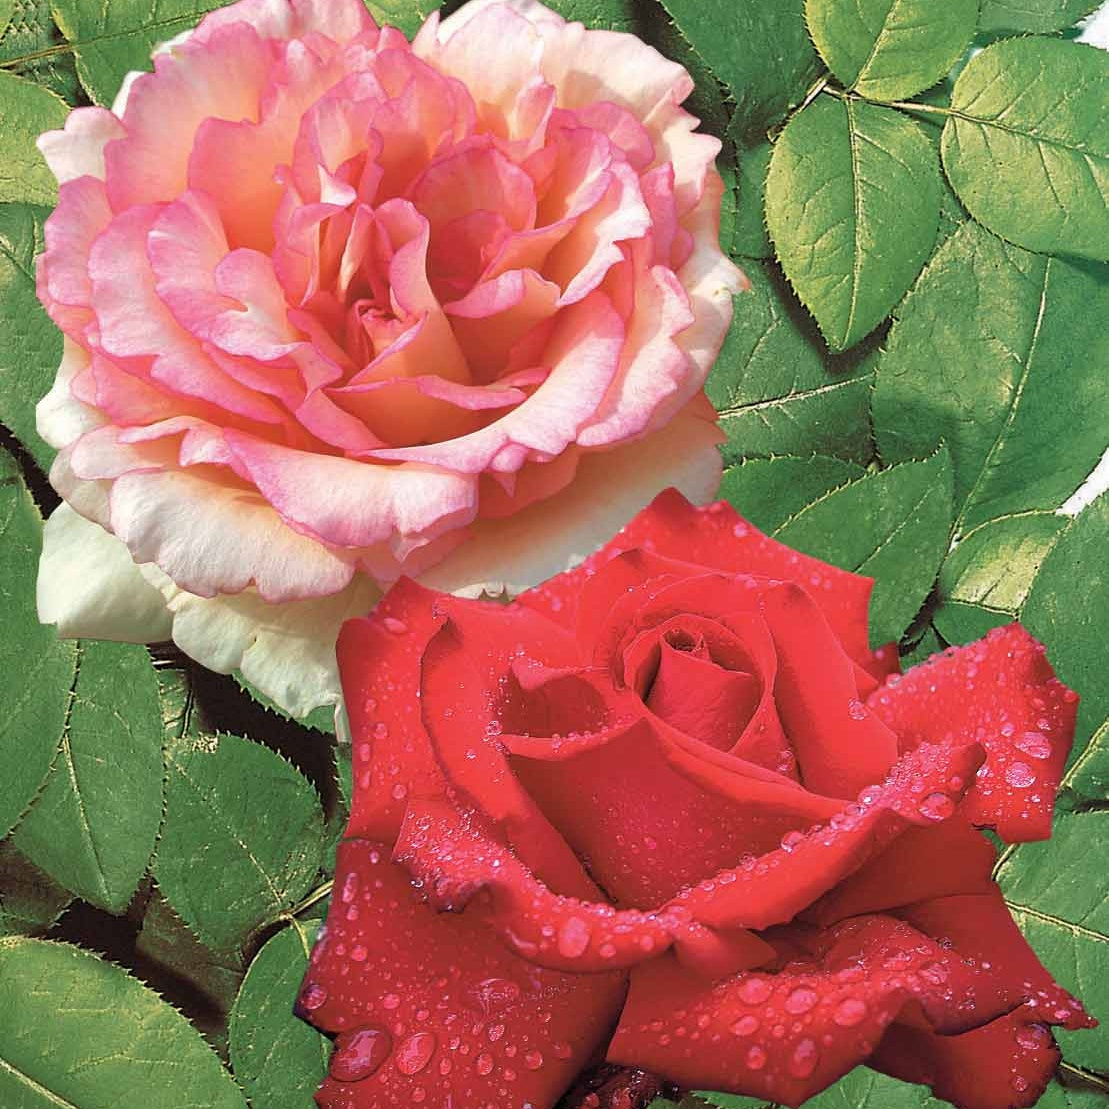 2 Rosiers buissons résistants aux maladies - Rosa Grande Amore, Souvenir de Baden Baden - Plantes